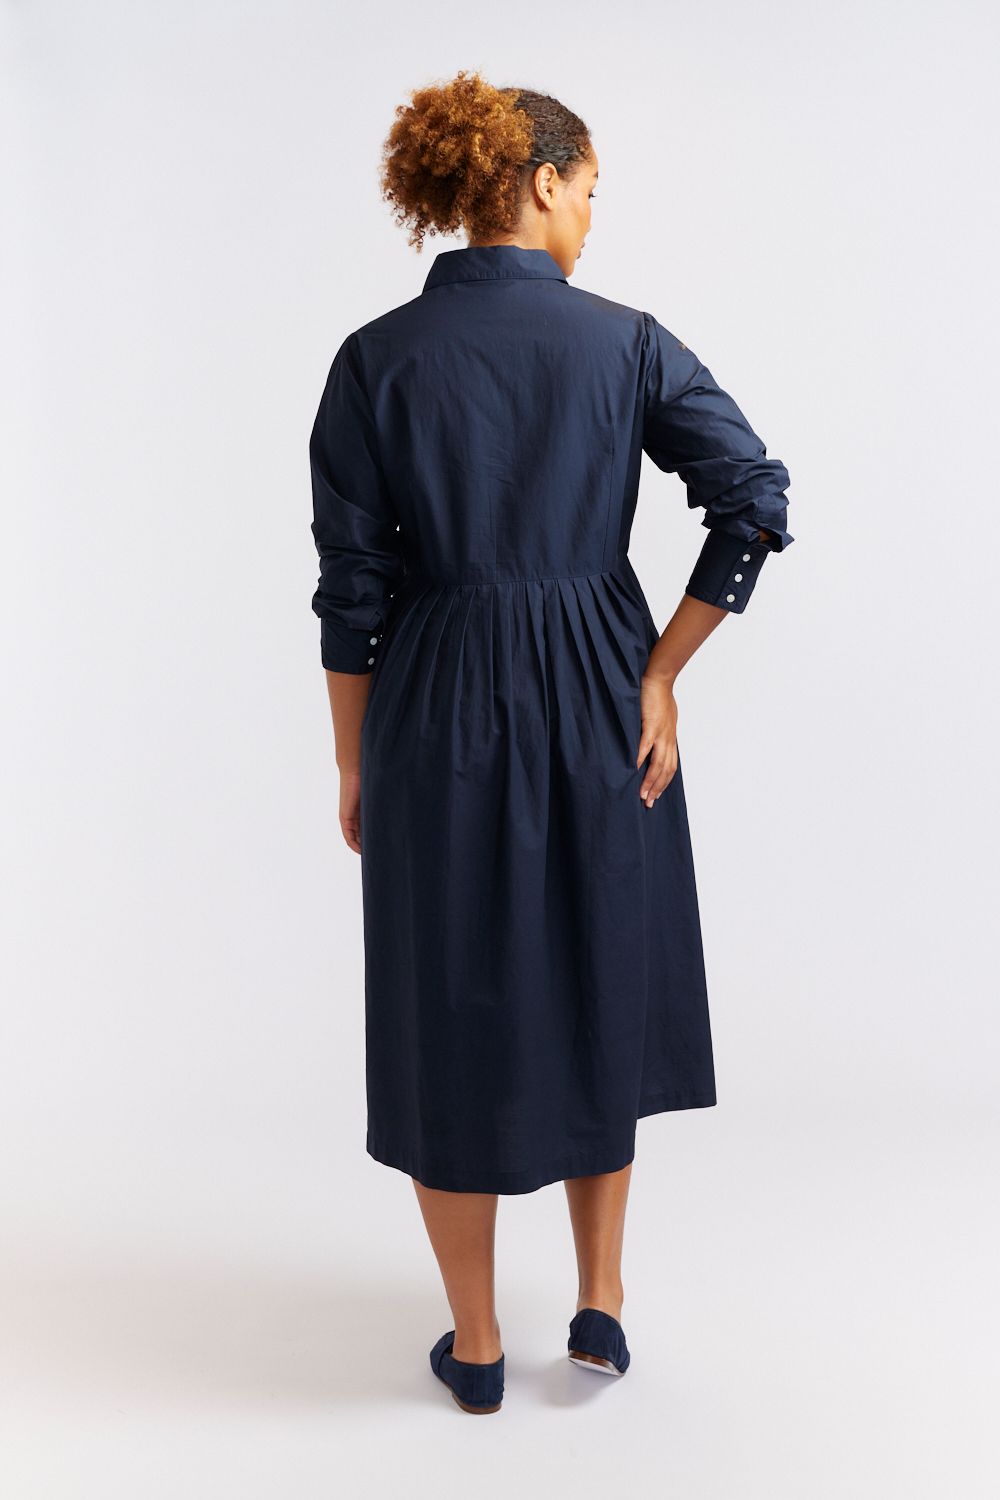 Juniper Dress - Navy Poplin Dresses Alessandra   